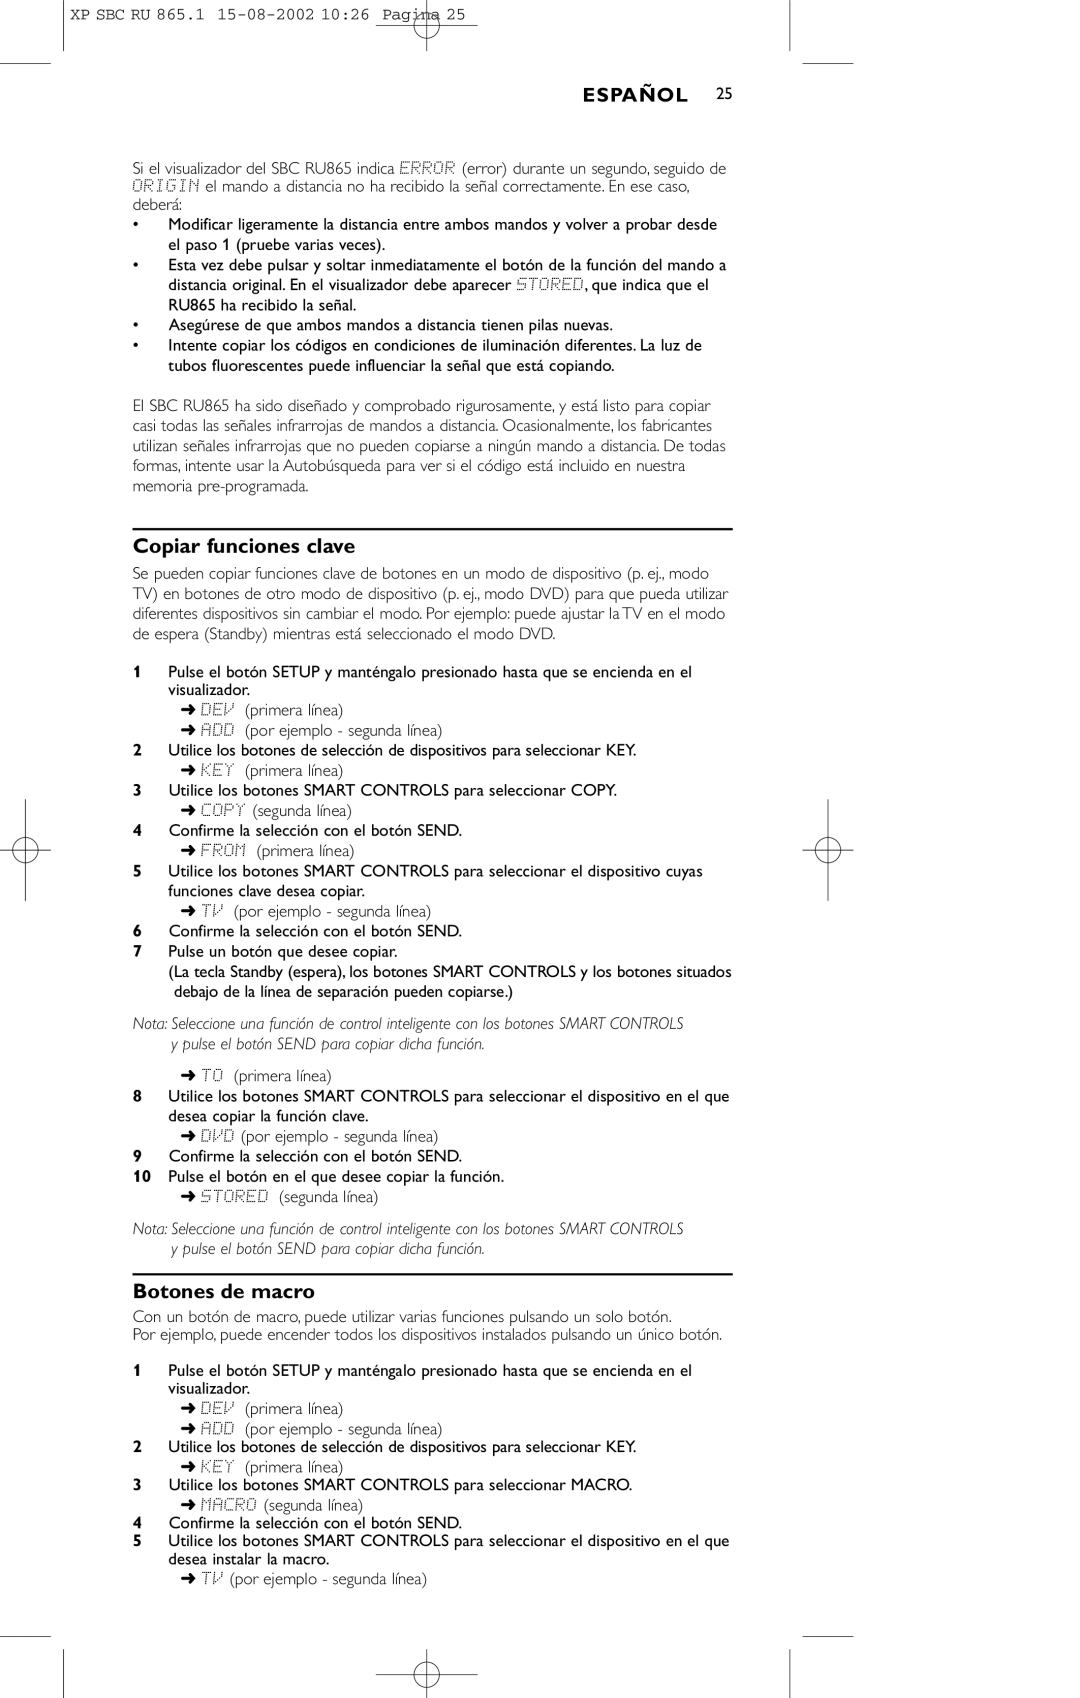 Philips SBC RU 865/00 manual Copiar funciones clave, Botones de macro 